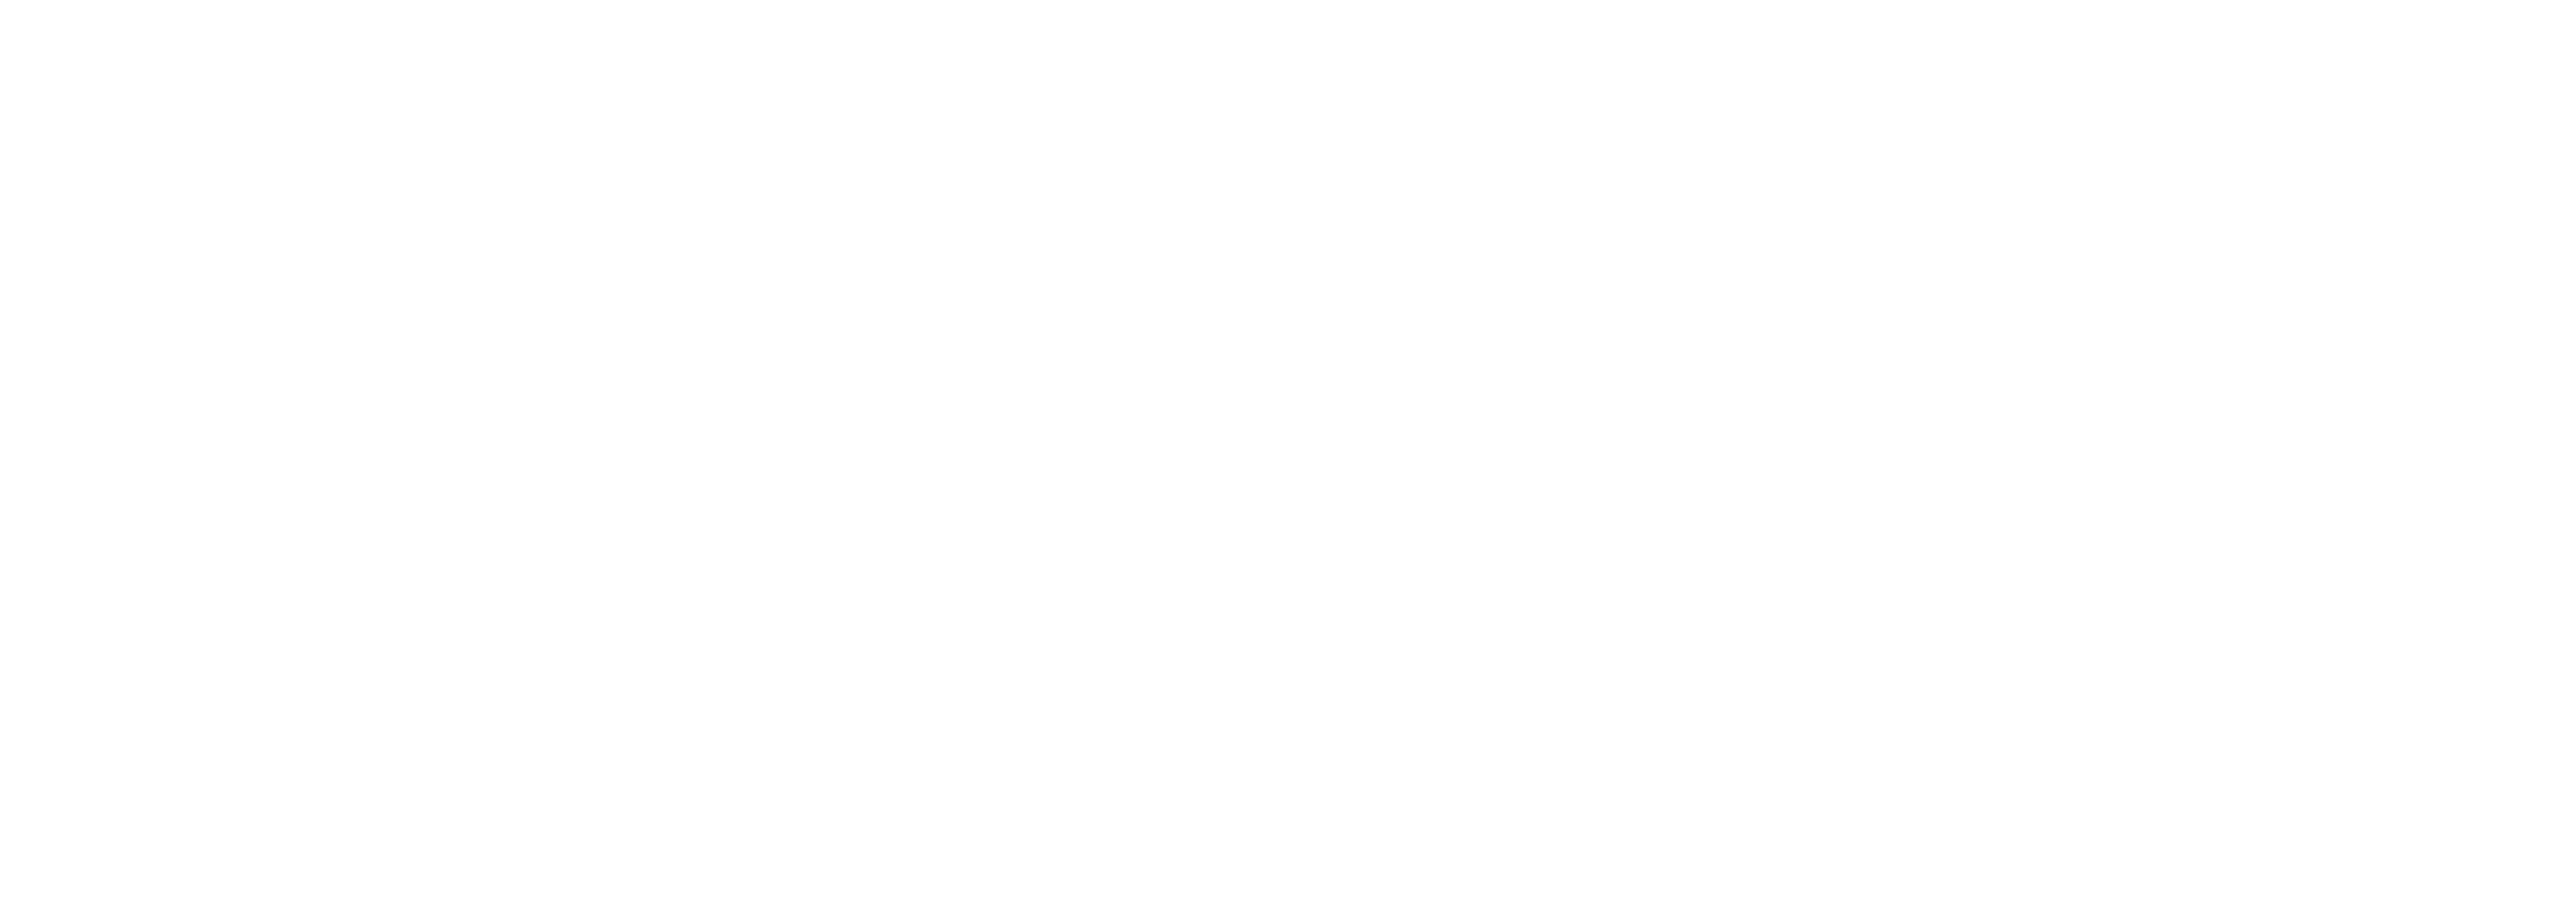 Logotipo da Pousada Portal do Equilibrium